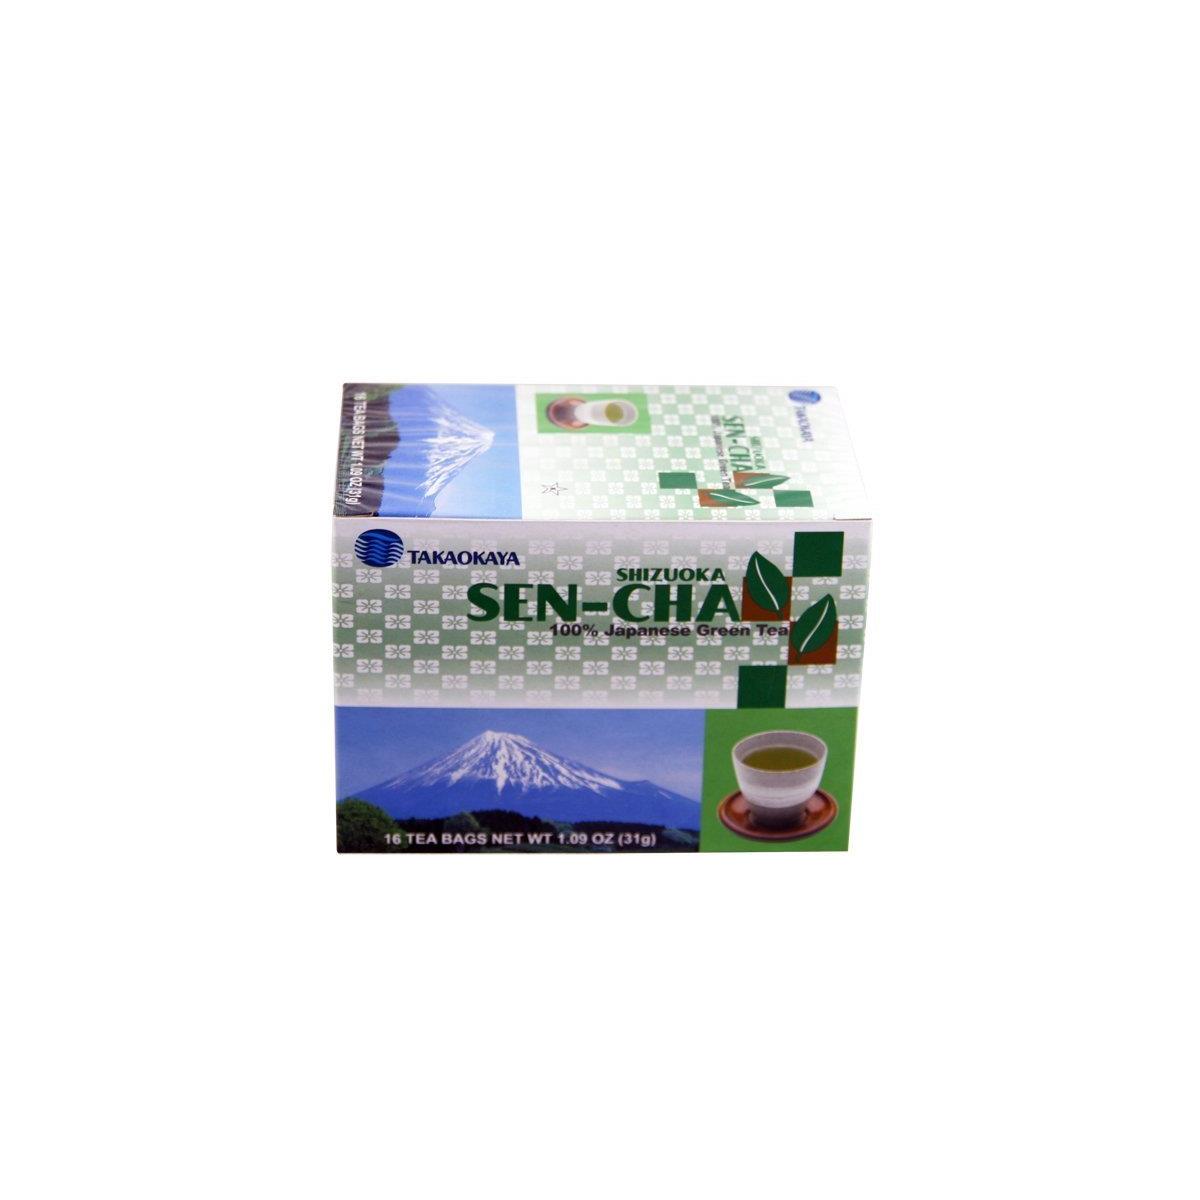 Takaokaya Shizuoka Sen-Cha (Japanese Green Tea) - 1.09oz (3 packs)